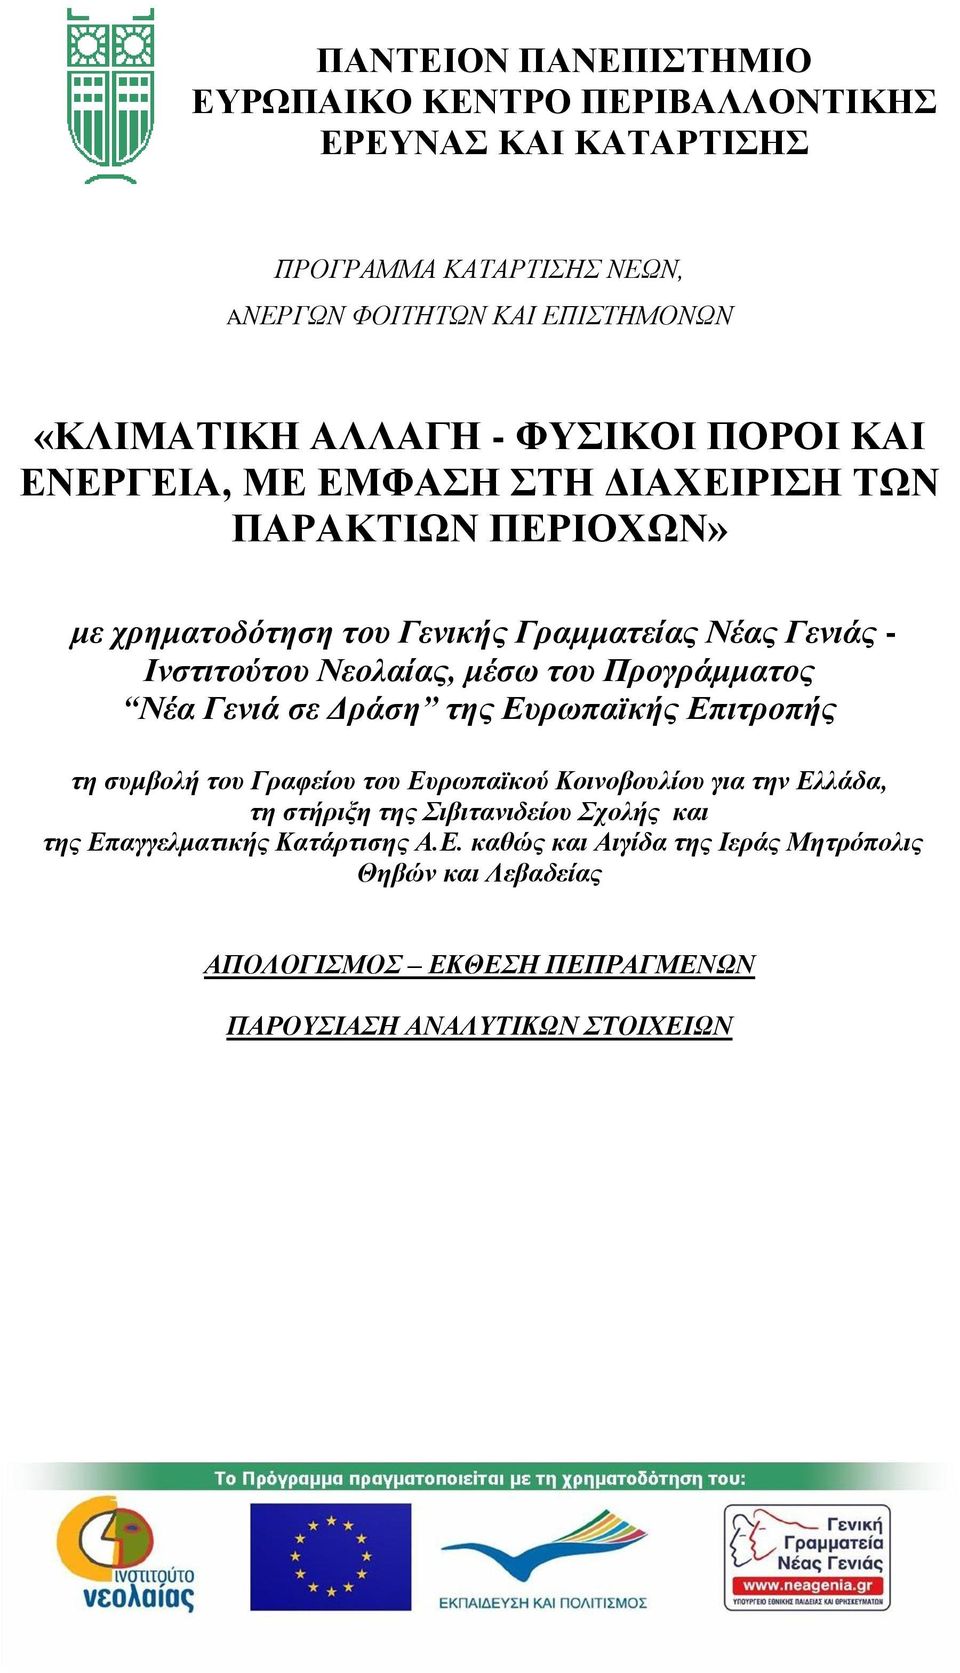 του Προγράμματος Νέα Γενιά σε Δράση της Ευρωπαϊκής Επιτροπής τη συμβολή του Γραφείου του Ευρωπαϊκού Κοινοβουλίου για την Ελλάδα, τη στήριξη της Σιβιτανιδείου